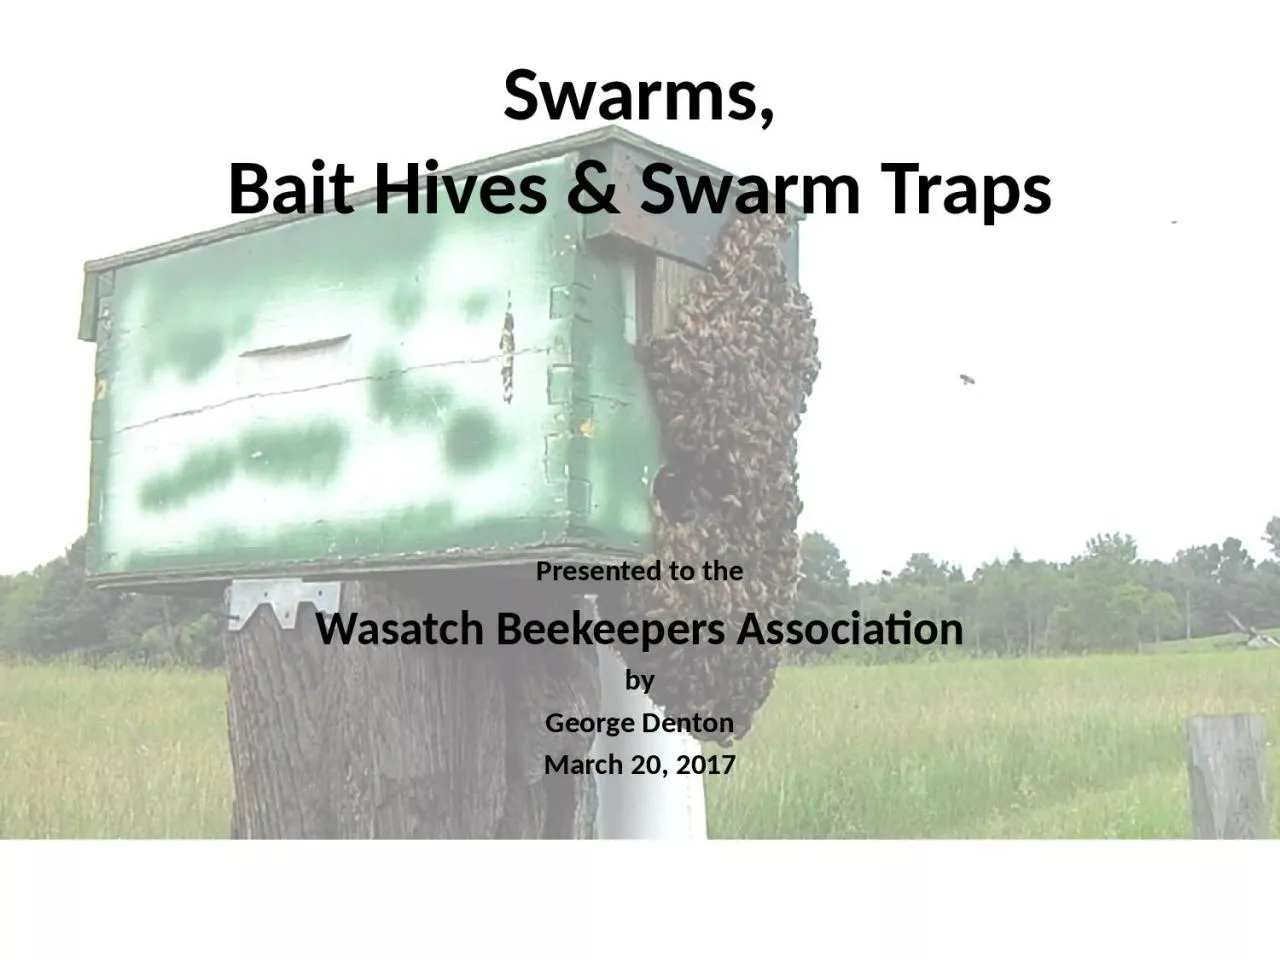 Swarms, Bait Hives & Swarm Traps